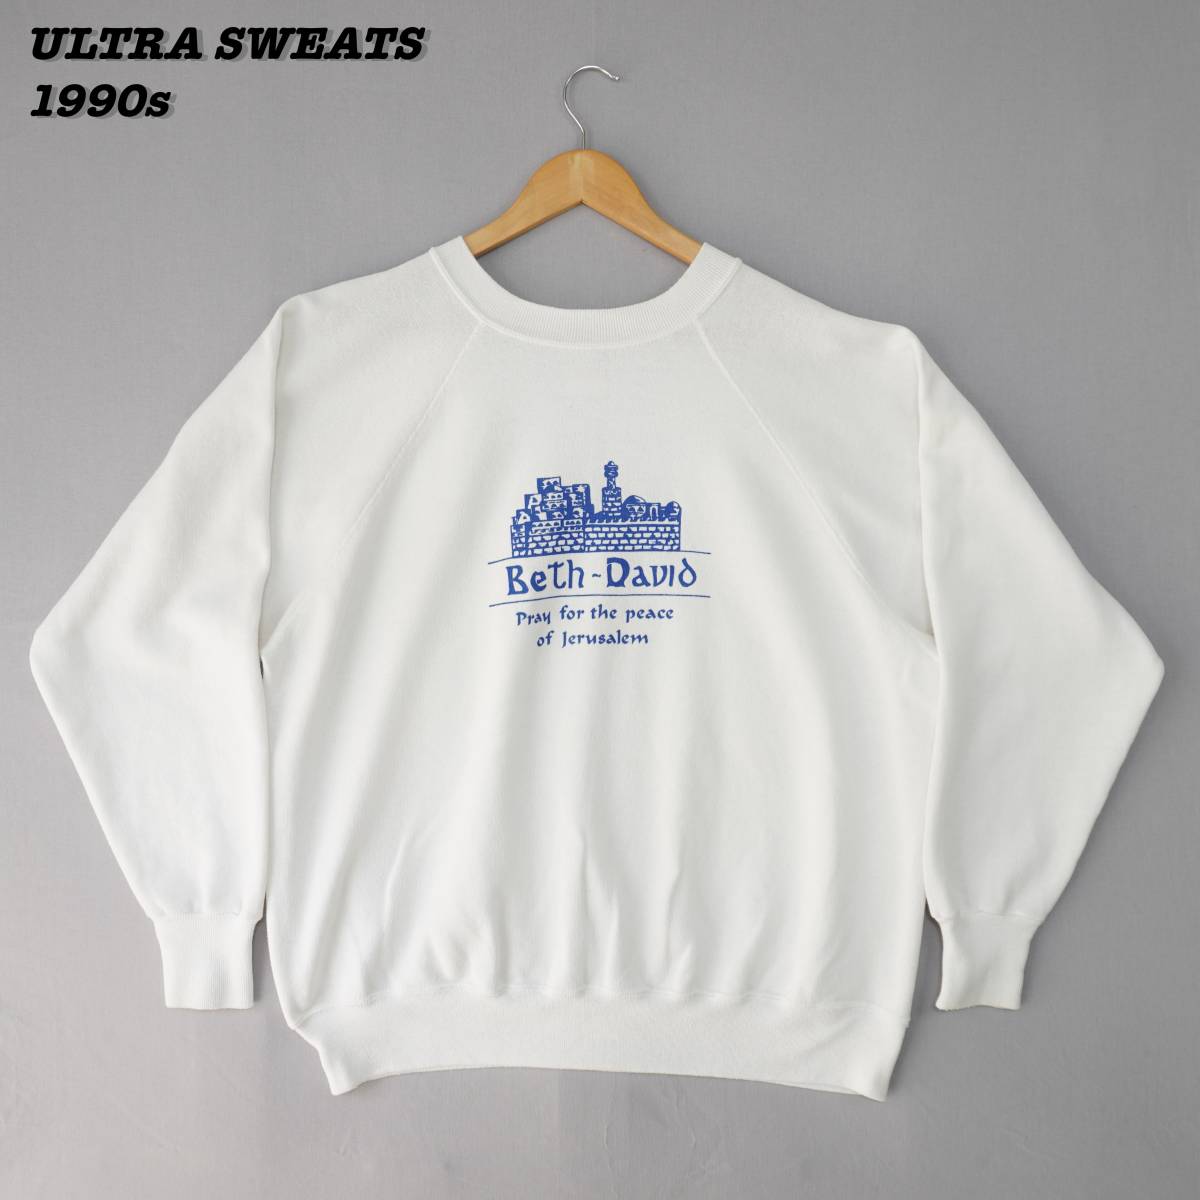 ULTRA SWEATS Sweatshirts SWT2328 1990s Made in USA ウルトラスウェット エルサレム スウェットシャツ 1990年代 アメリカ製_画像1